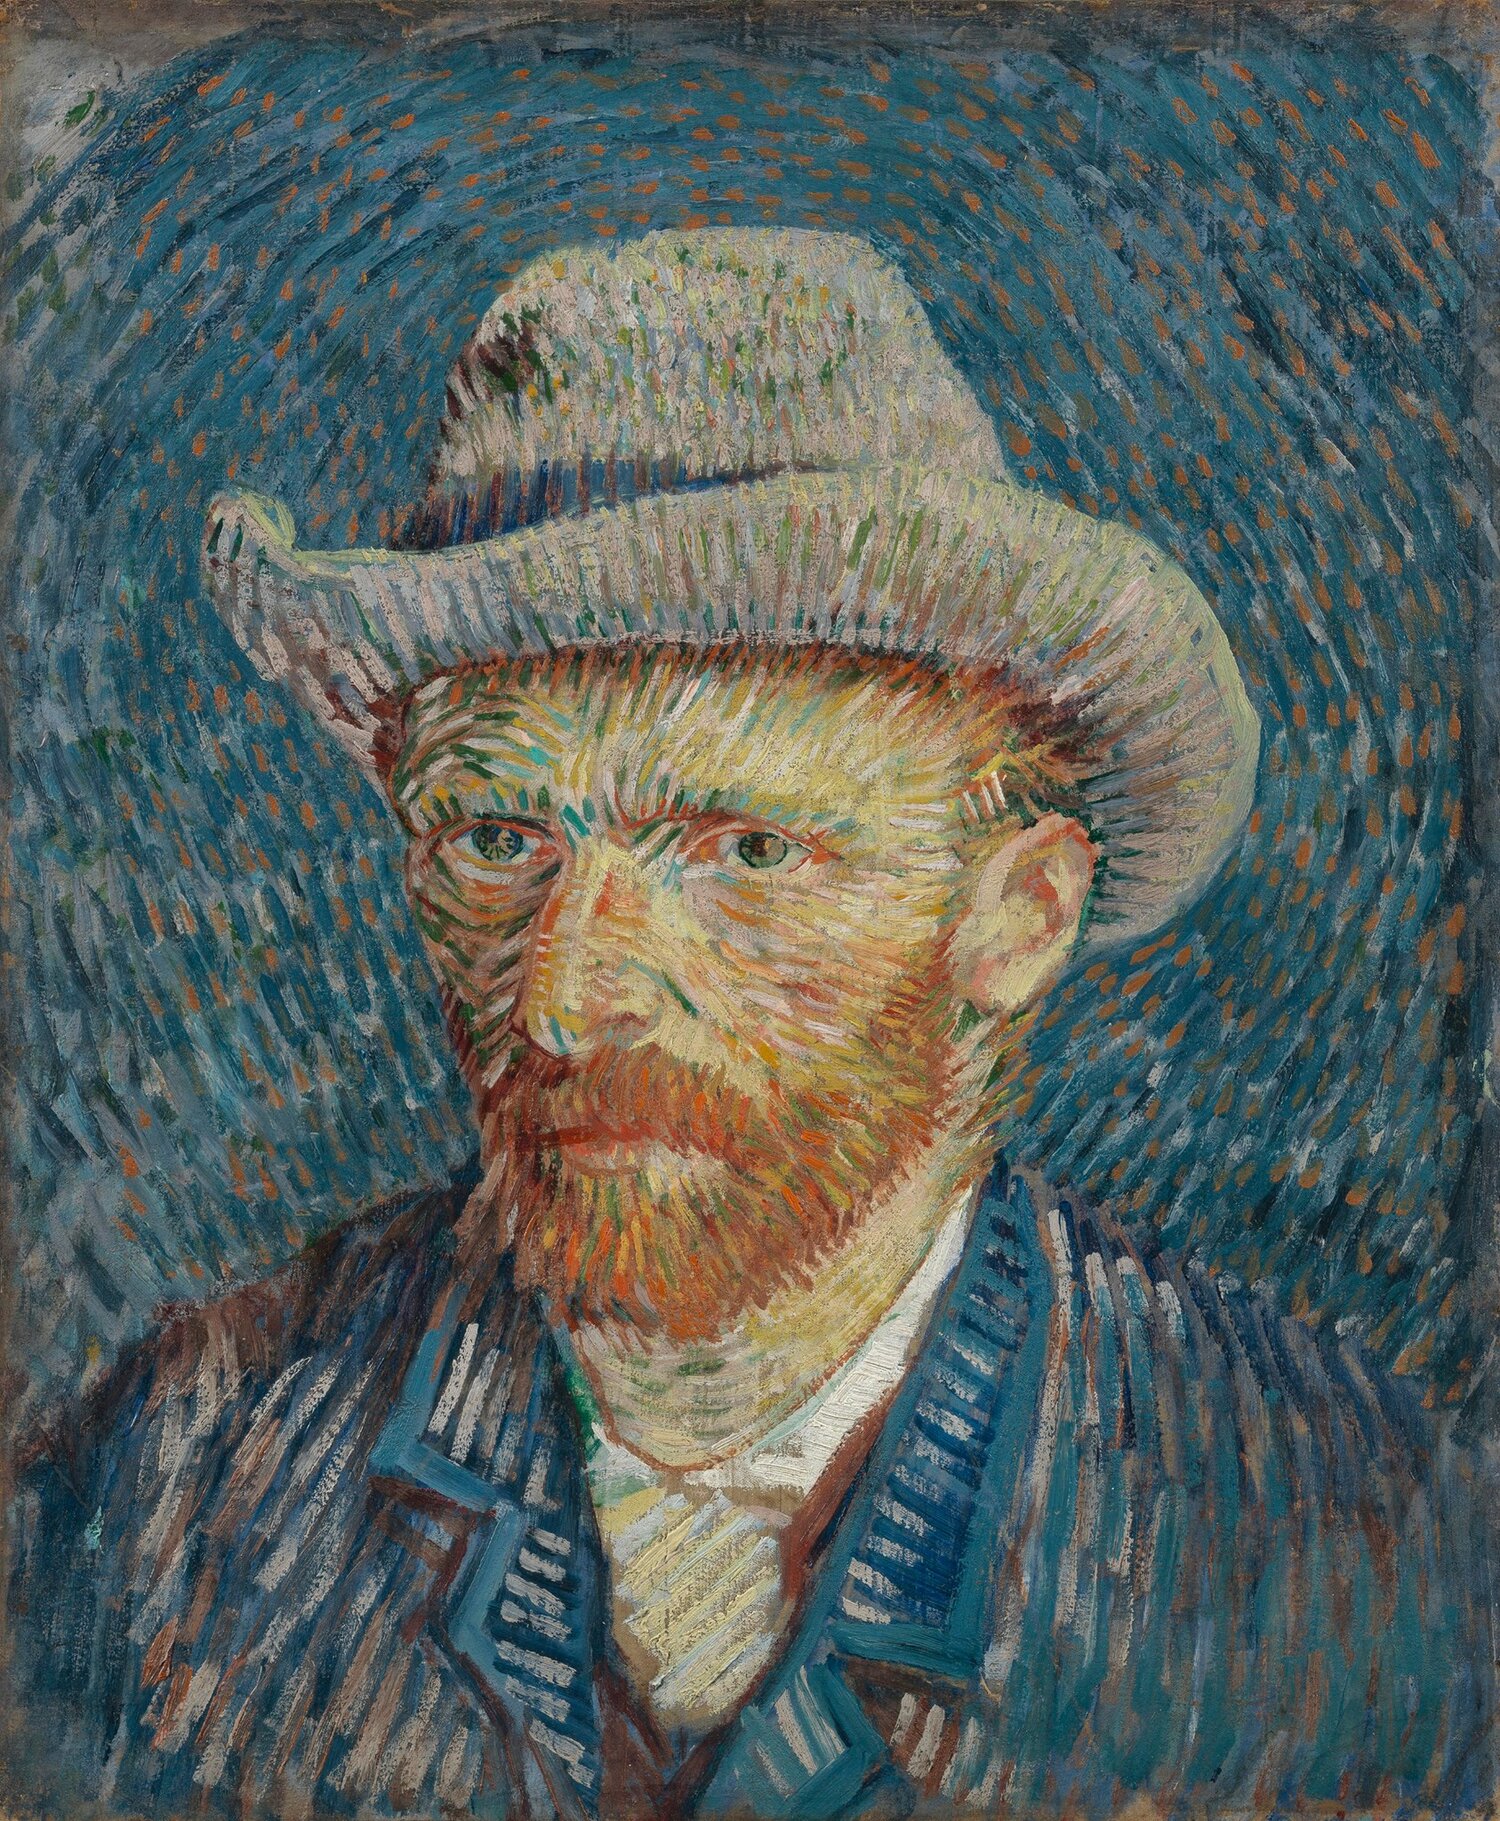 Image via    Van Gogh Museum